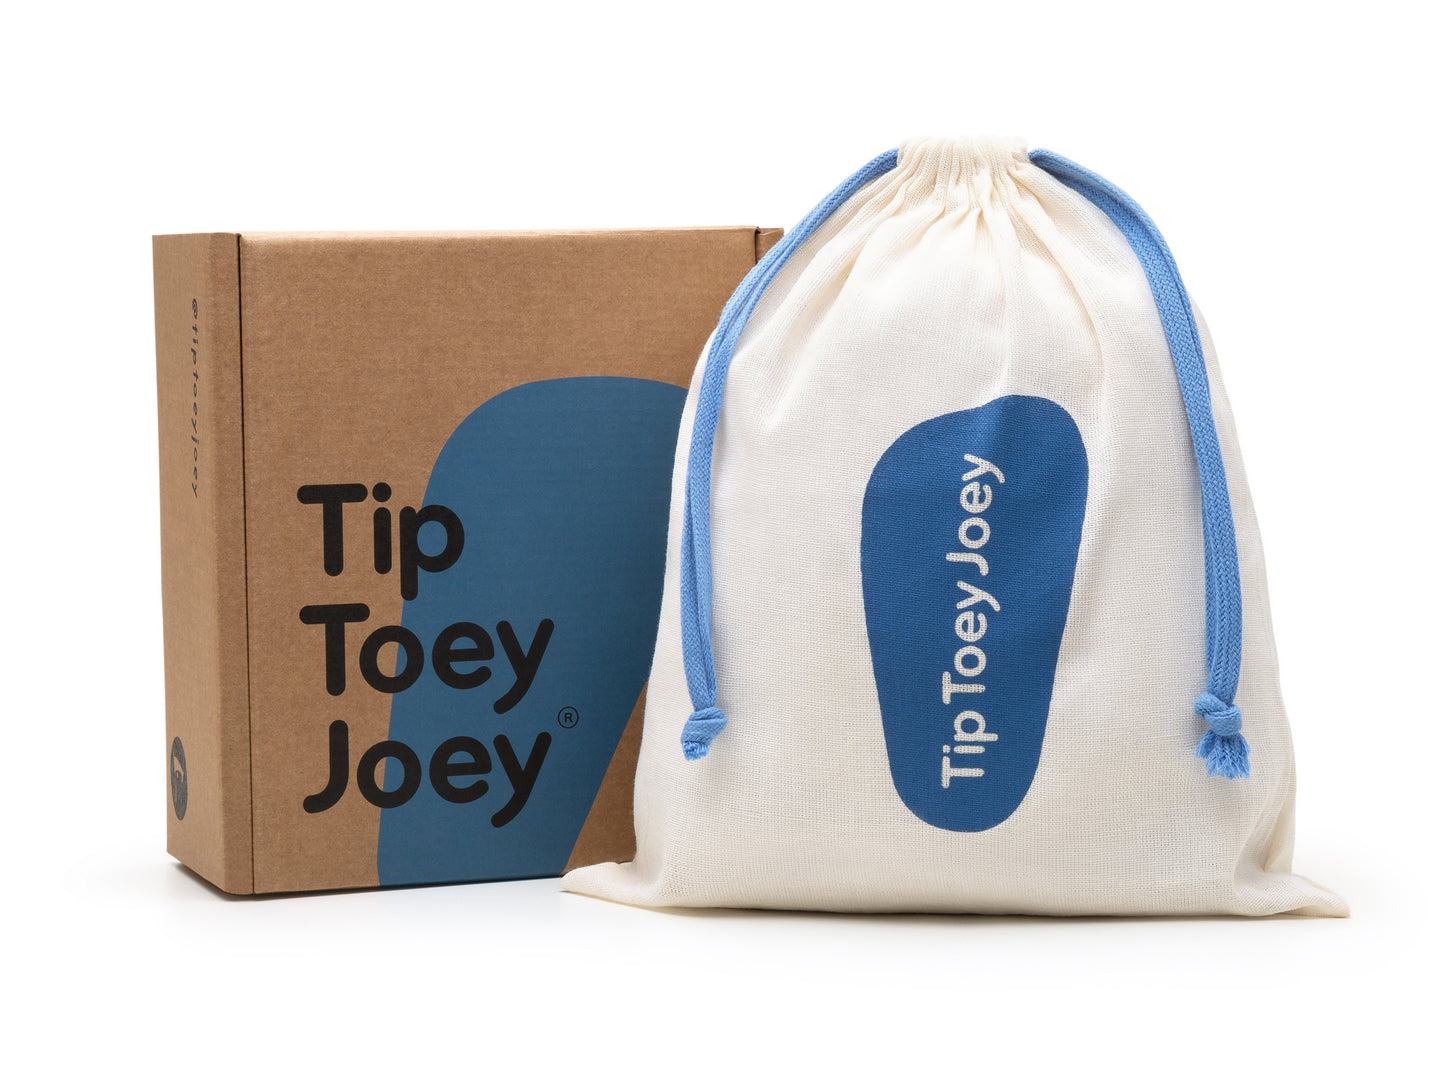 Tip Toey Joey - Ramp Colors Menta